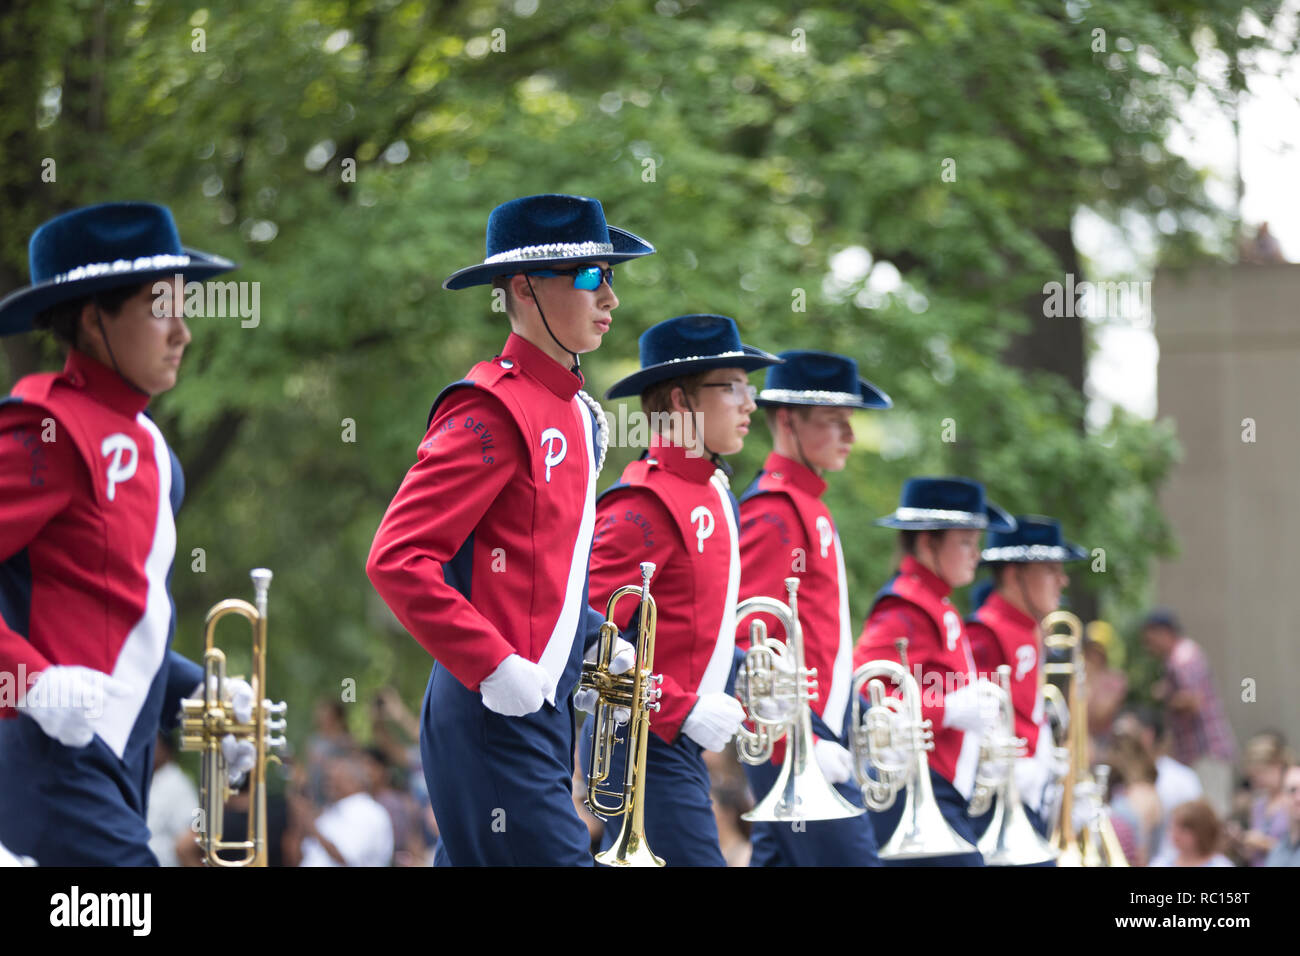 Washington, D.C., USA - 4 juillet 2018, le jour de l'indépendance nationale, le défilé Blue Devils Pulaski en fanfare, de Pulaski, New York Banque D'Images